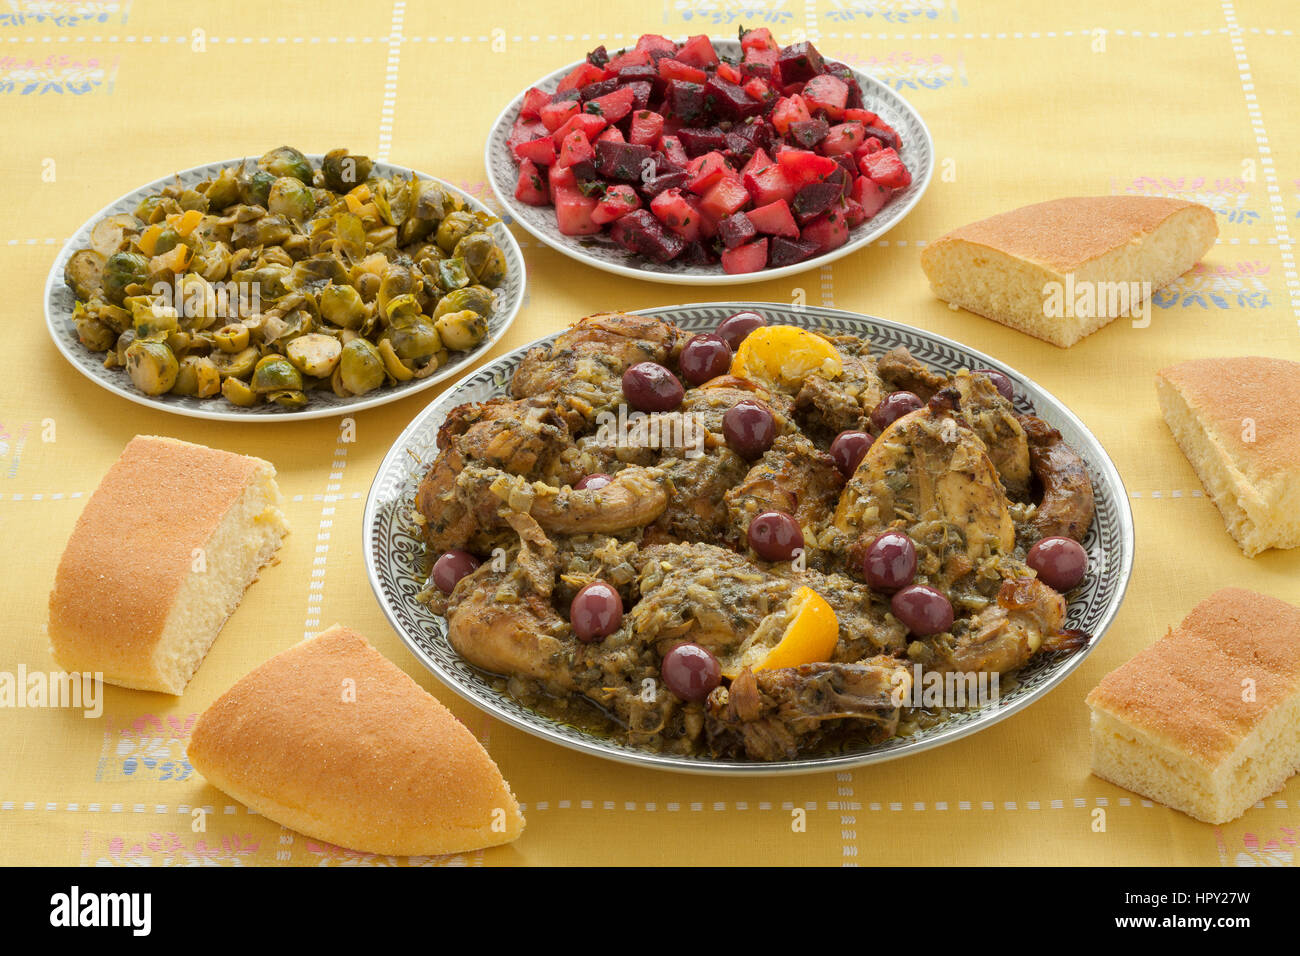 Marokkanischen Mahlzeit mit Huhn, Rosenkohl, rote Beete Salat und Brot Stockfoto